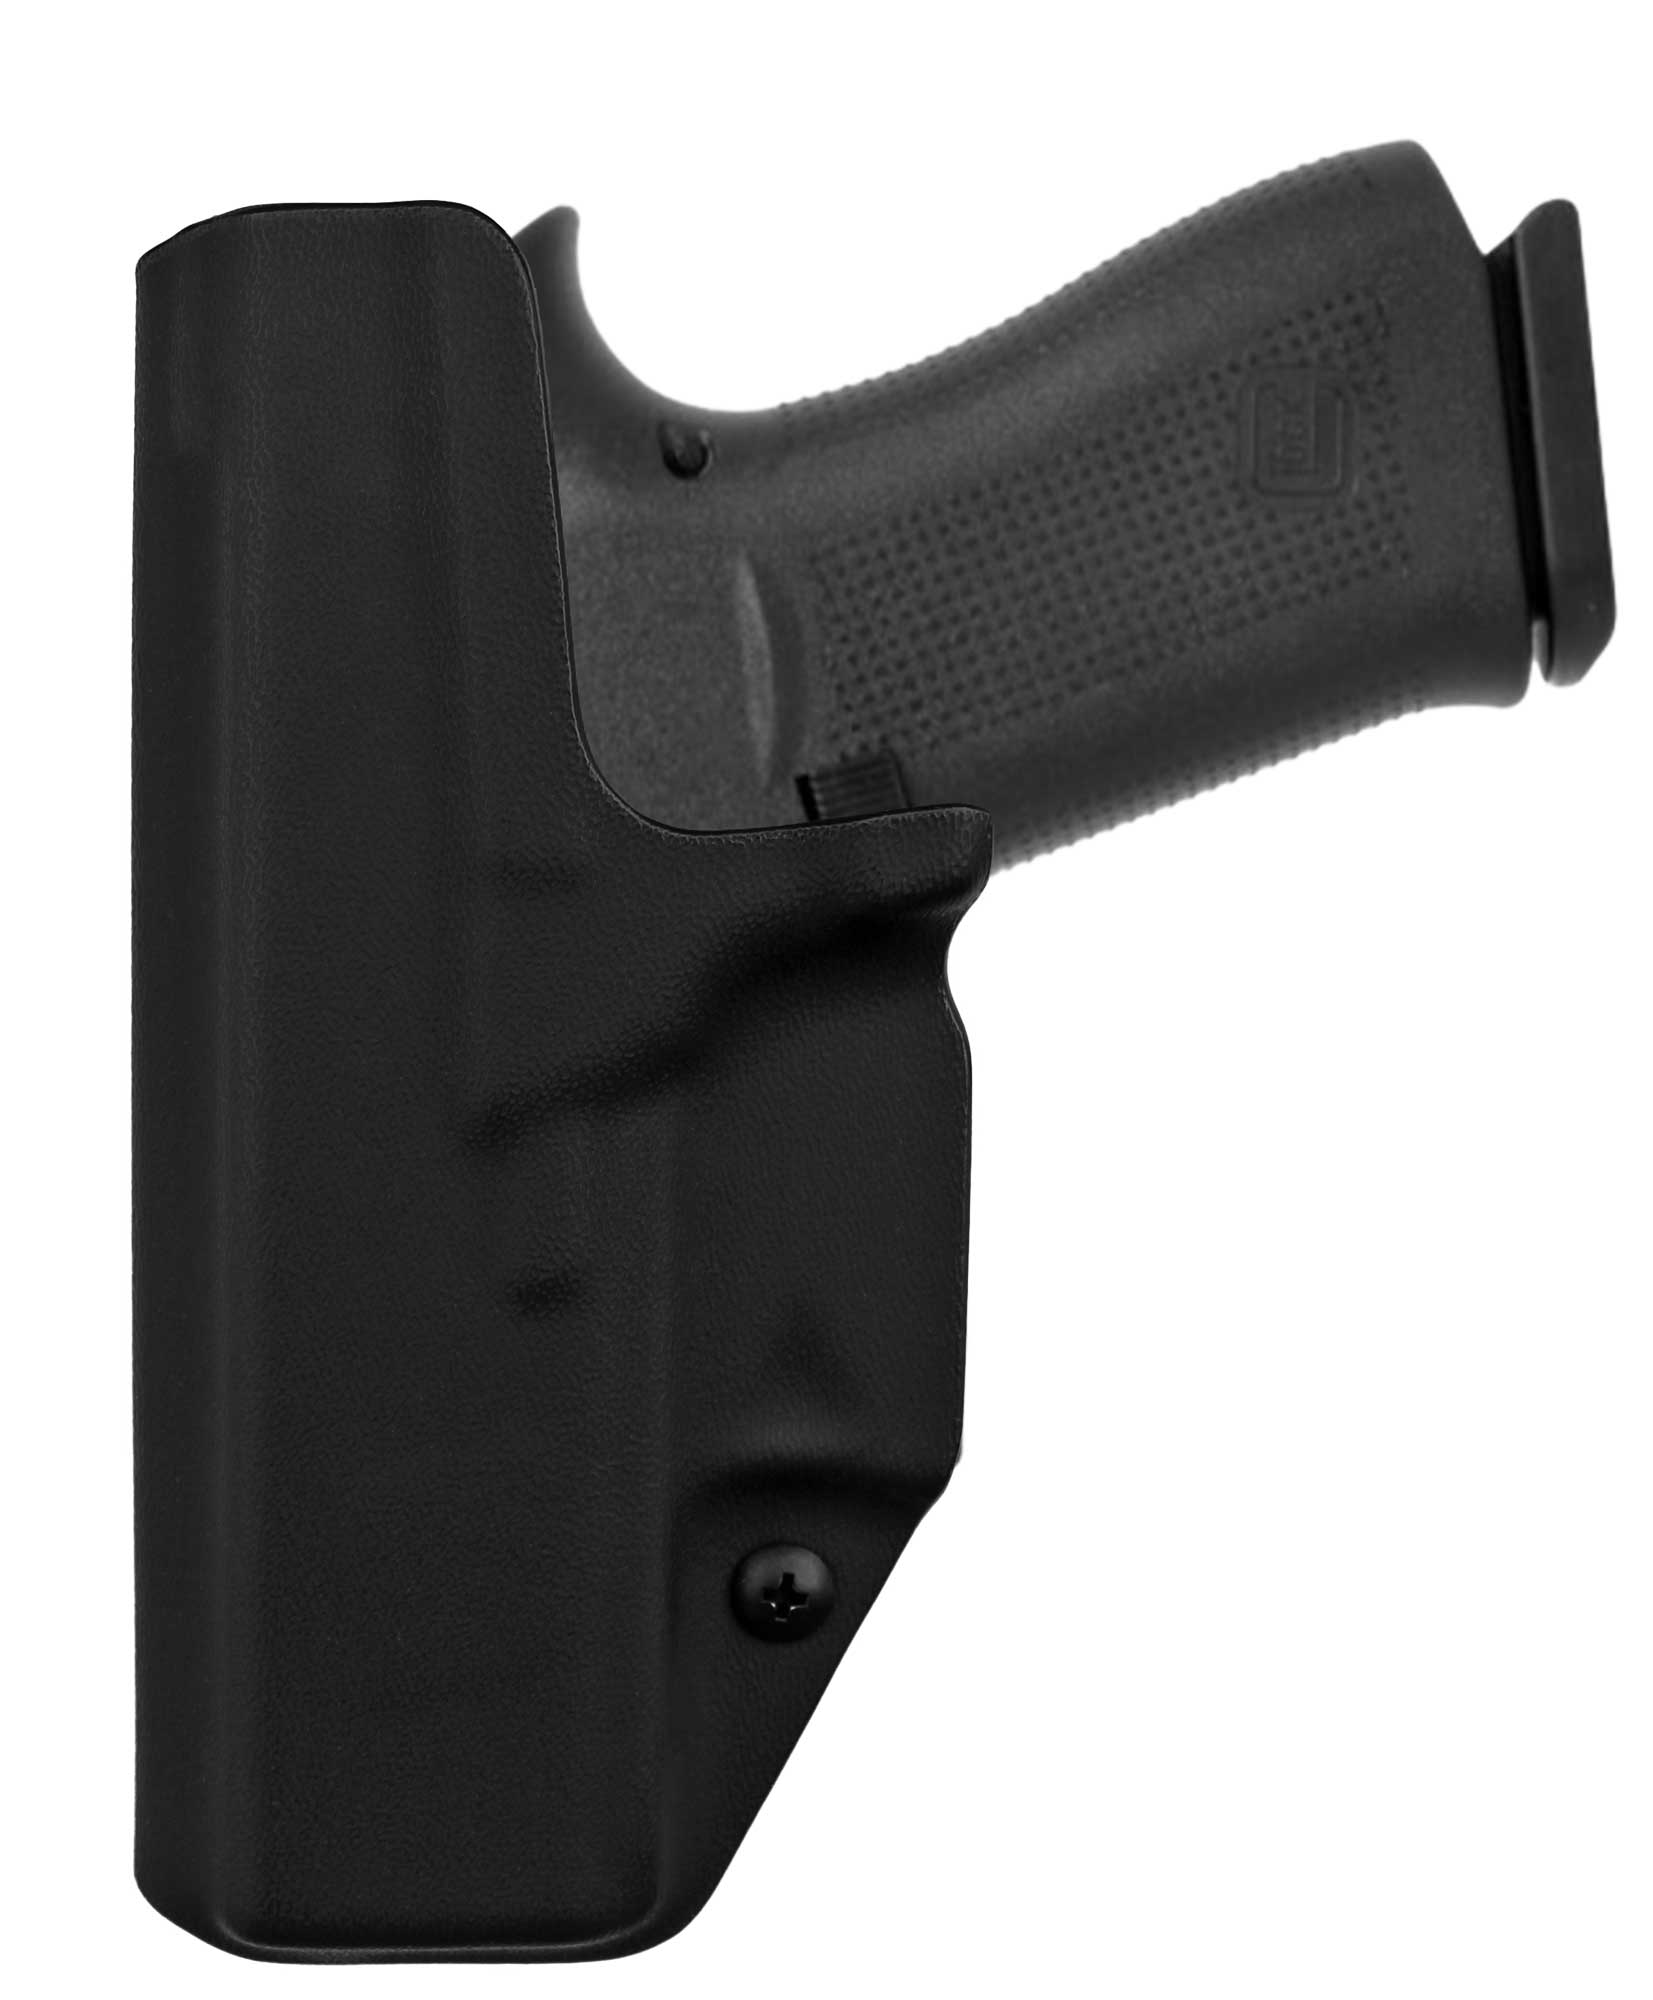 Coldre [G43x] [G43] Glock Kydex® [Velado] + 2x Porta-Carregador Polímero